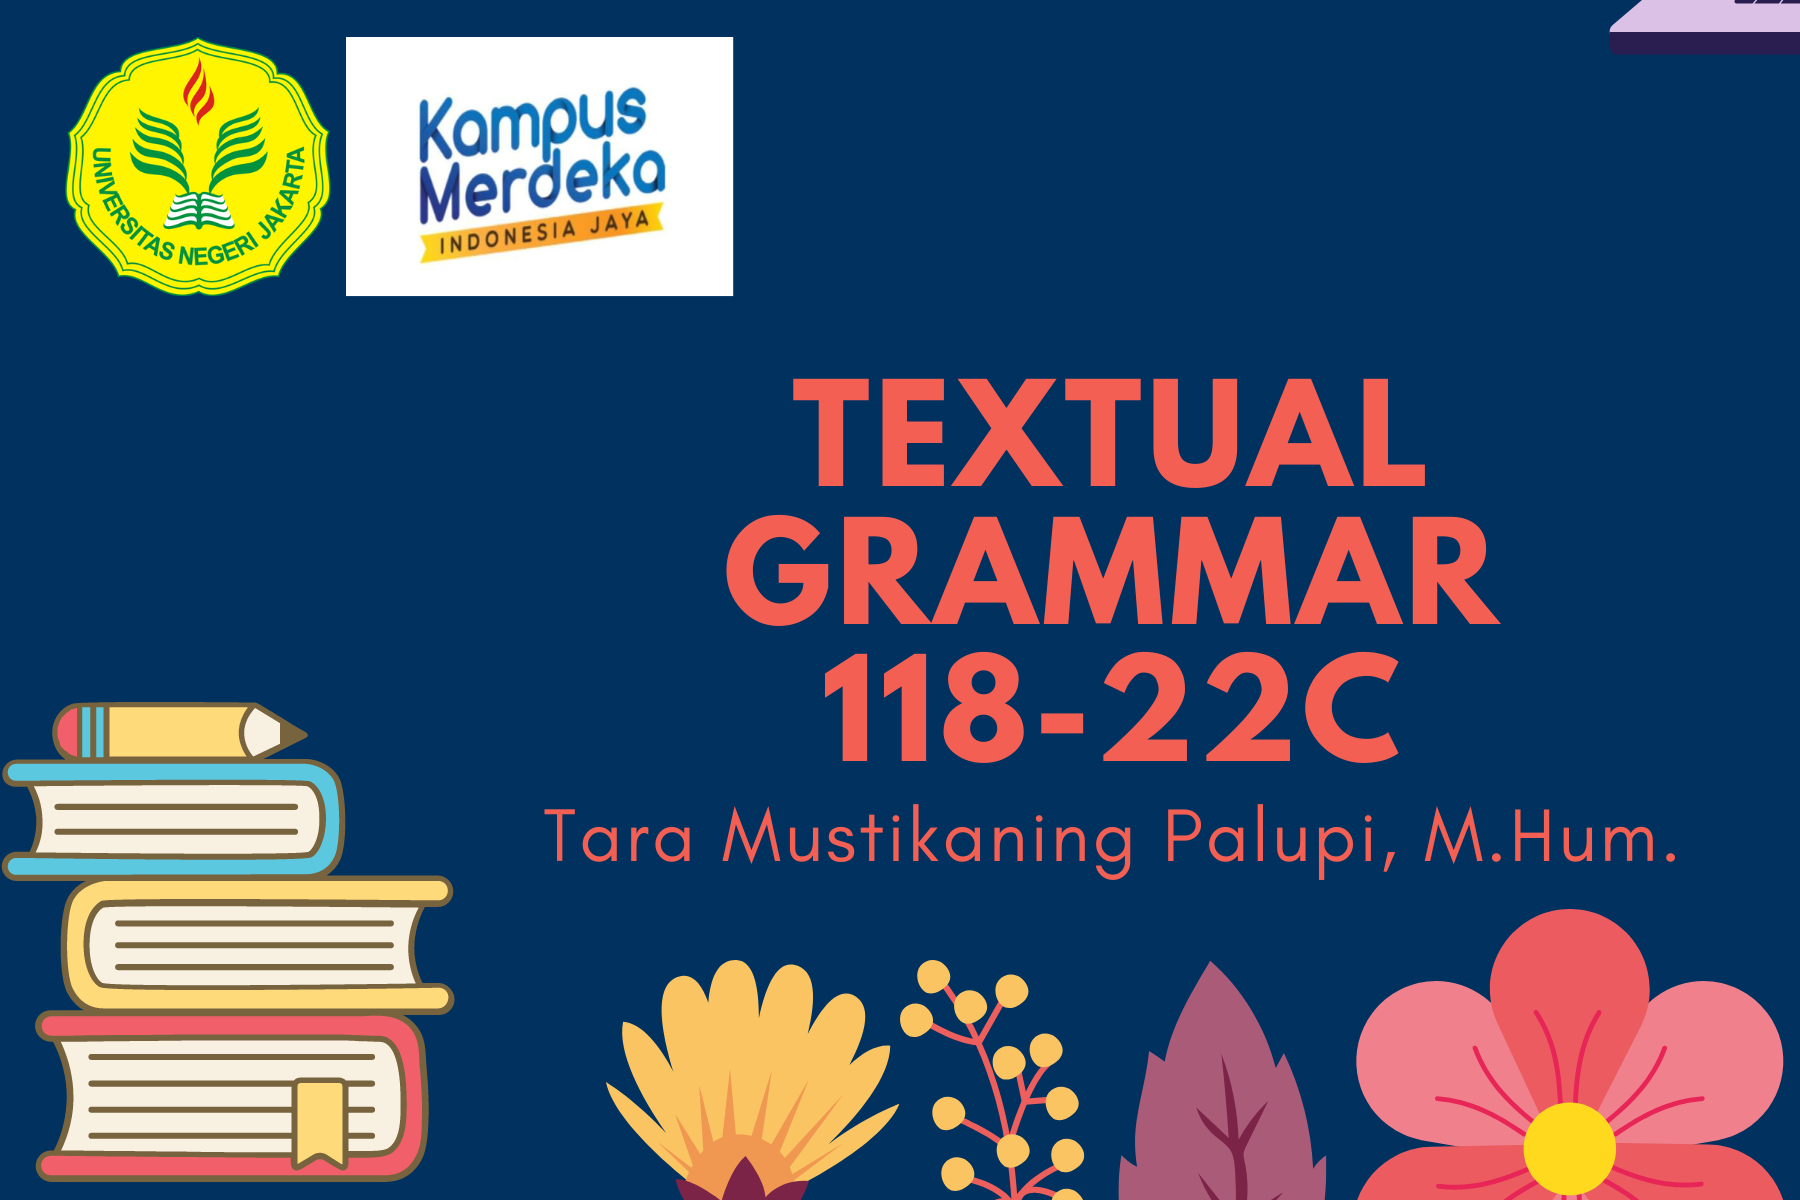 Textual Grammar (118-22C)